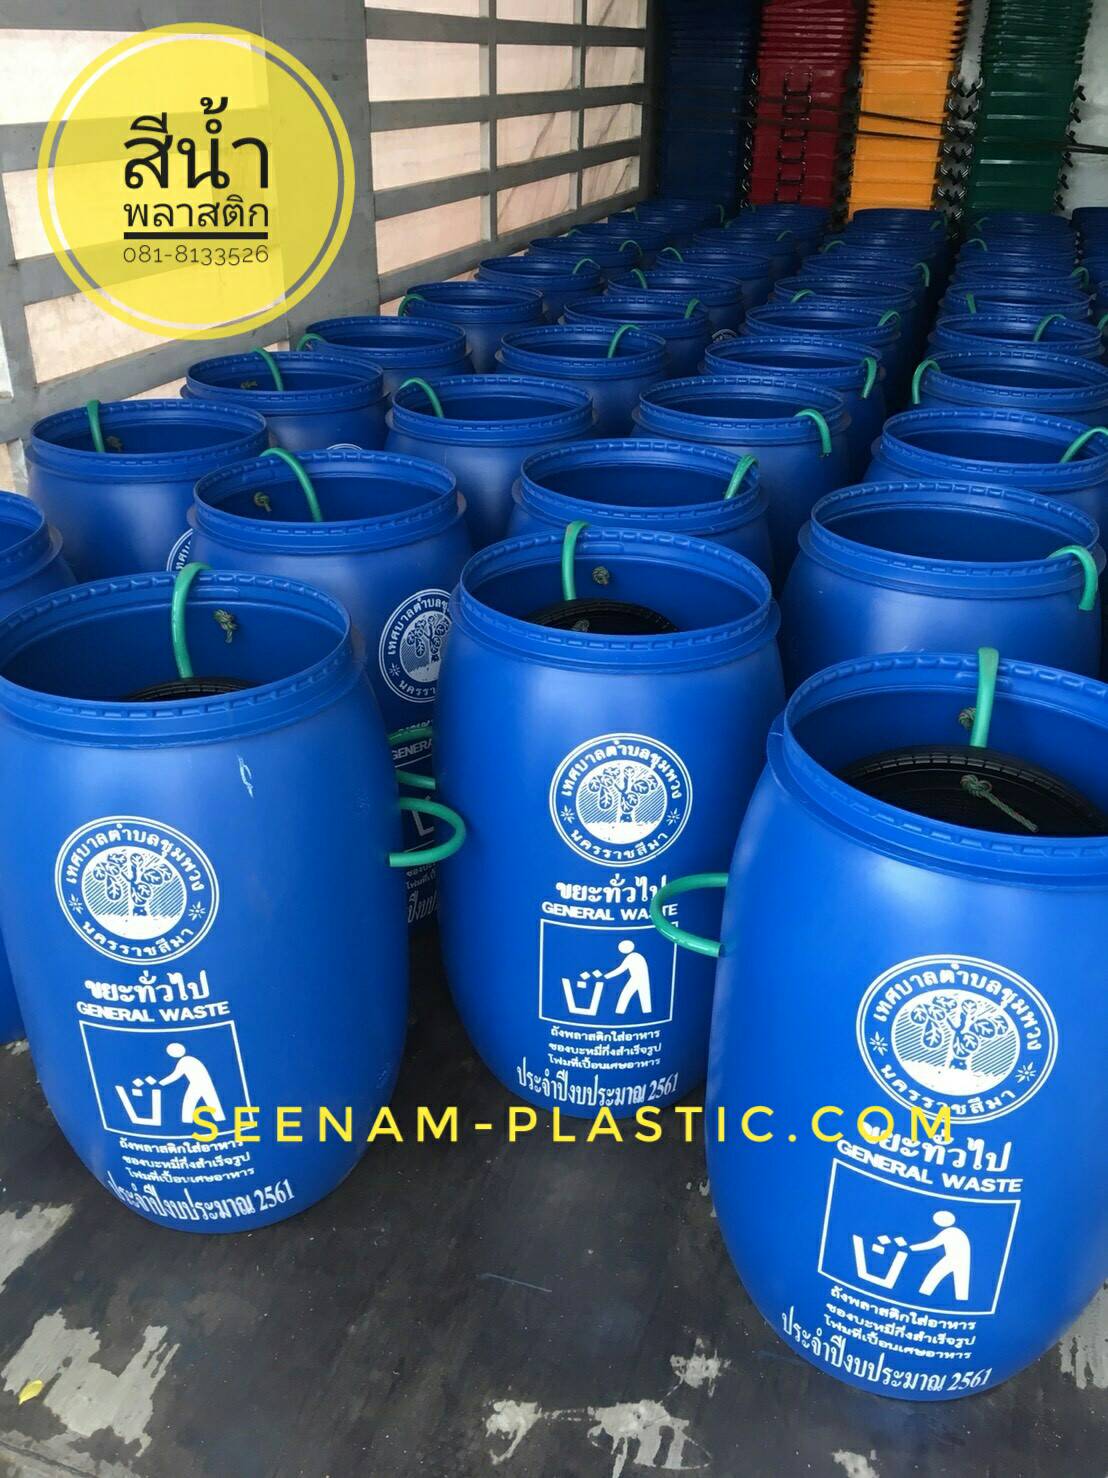 ถังขยะพลาสติก120ลิตร สีน้ำเงิน, ถังขยะพลาสติก ทรงกระบอก120ลิตร, ถังขยะเคมี120ลิตร สีน้ำเงิน, ถังขยะ120ลิตร ทรงกระบอก